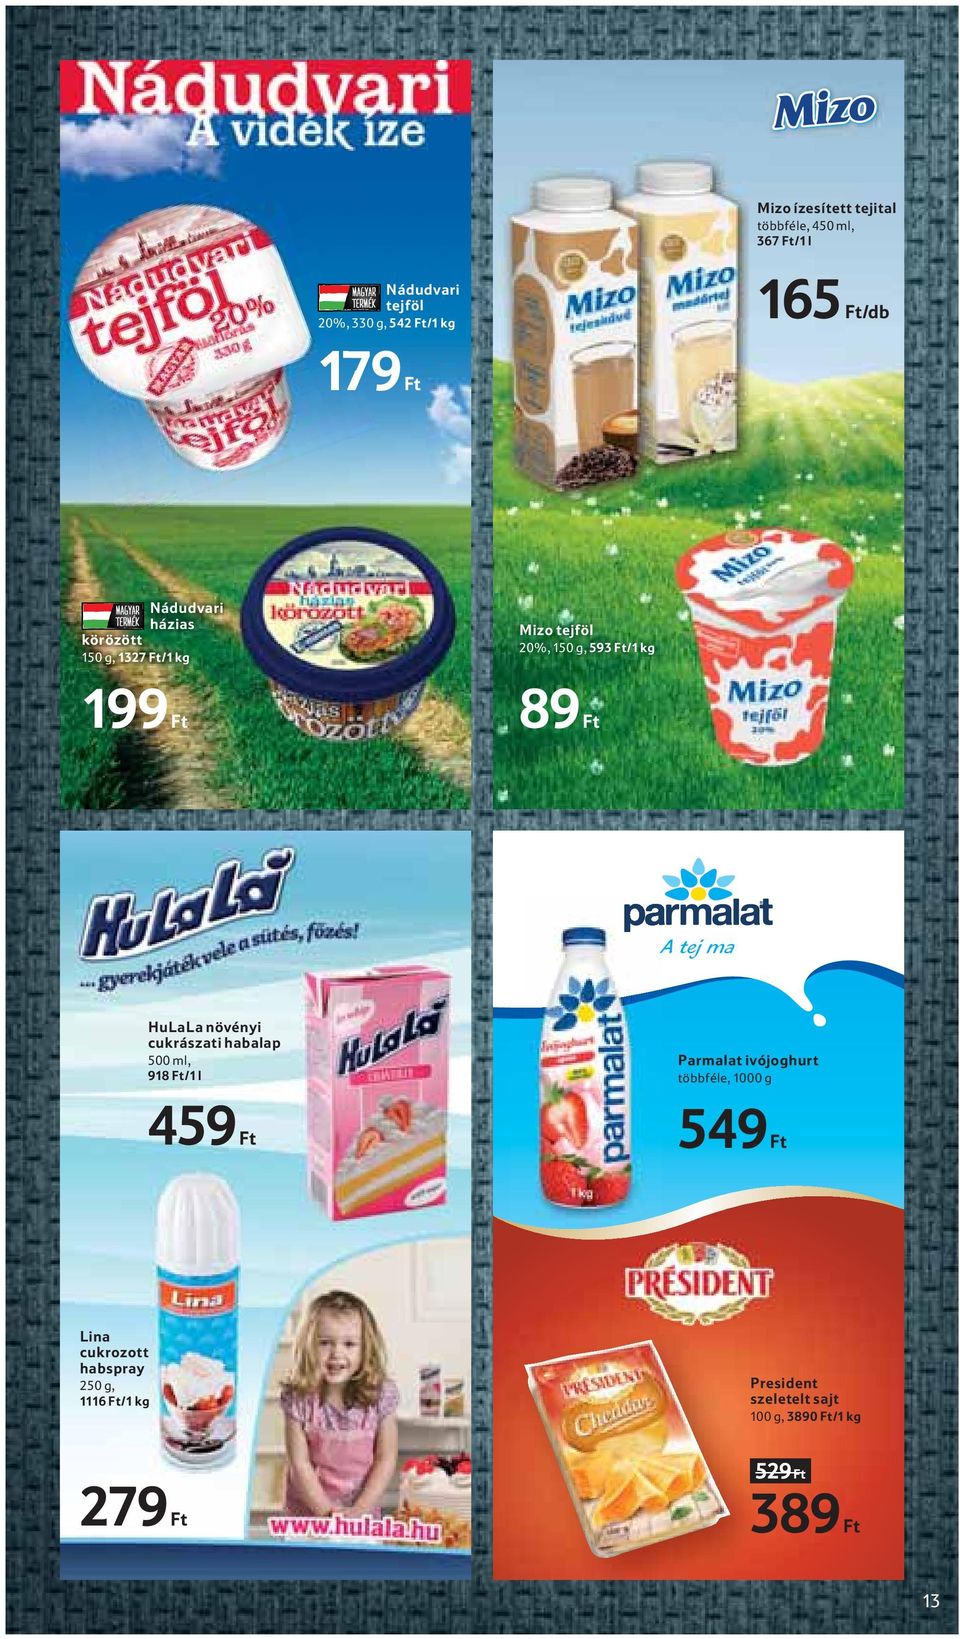 HuLaLa növényi cukrászati habalap 500 ml, 918 Ft/1 l Parmalat ivójoghurt többféle, 1000 g 459 Ft 549 Ft